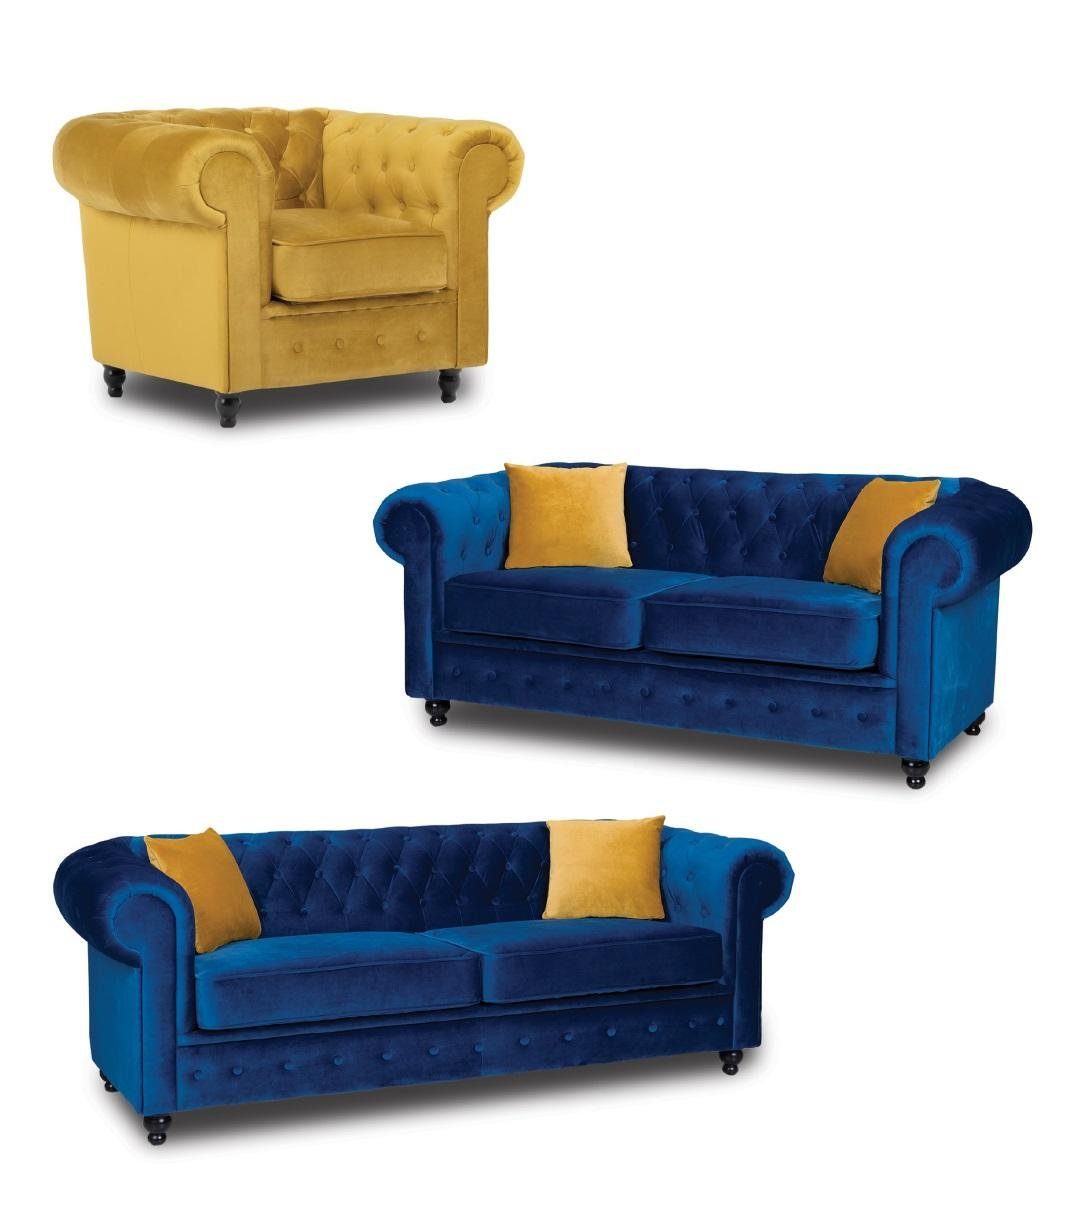 JVmoebel Sofa 3+2+1 Chesterfield Sofagarnitur Couch Möbel Wohnzimmer, Made in Europe | Alle Sofas